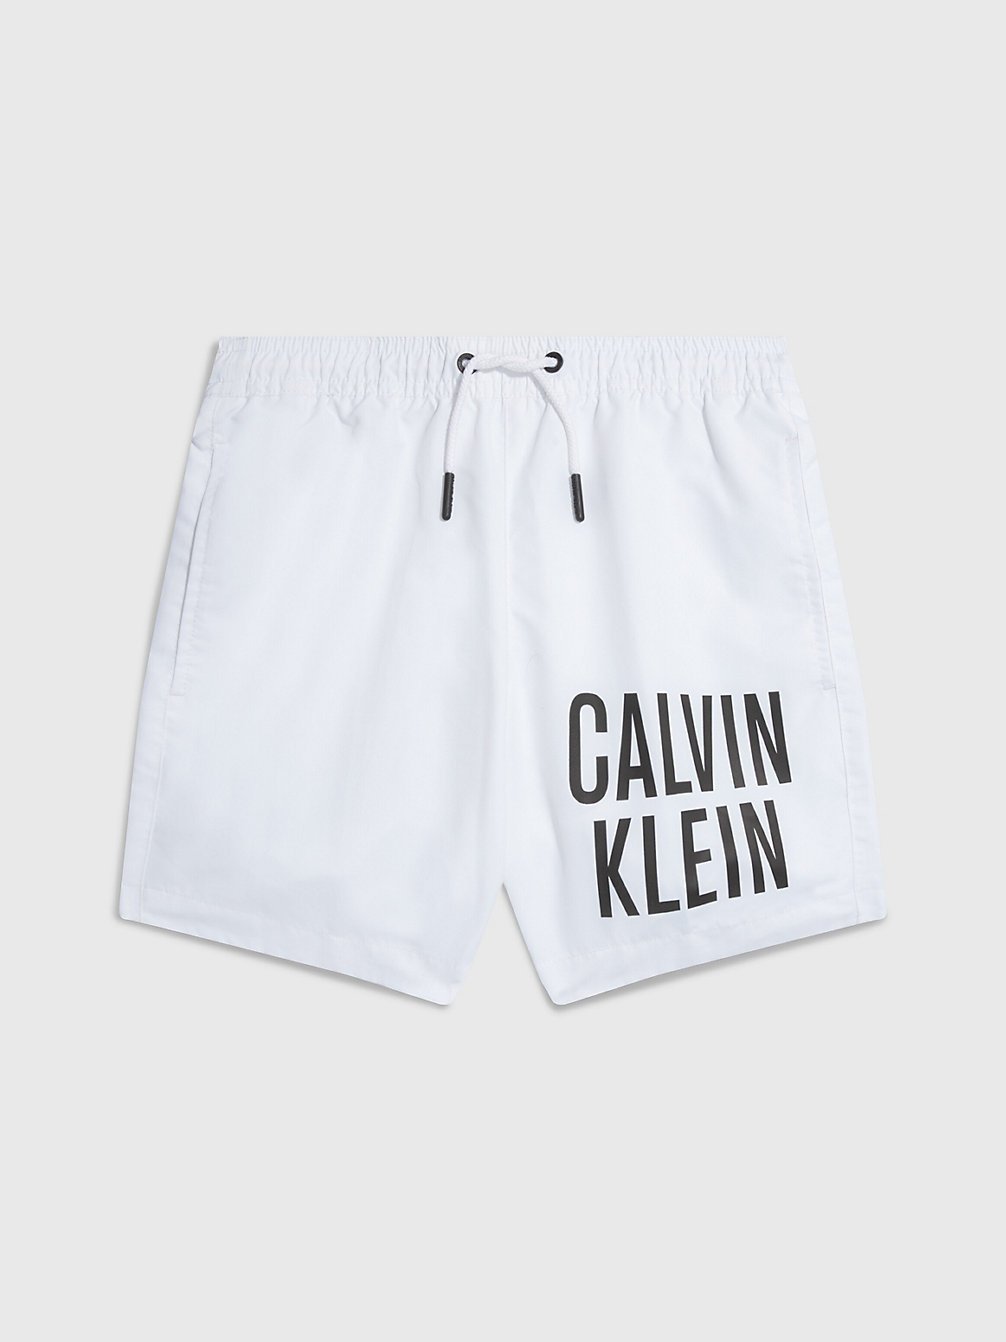 Pantaloncini Da Bagno Bambino - Intense Power > PVH CLASSIC WHITE > undefined boys > Calvin Klein